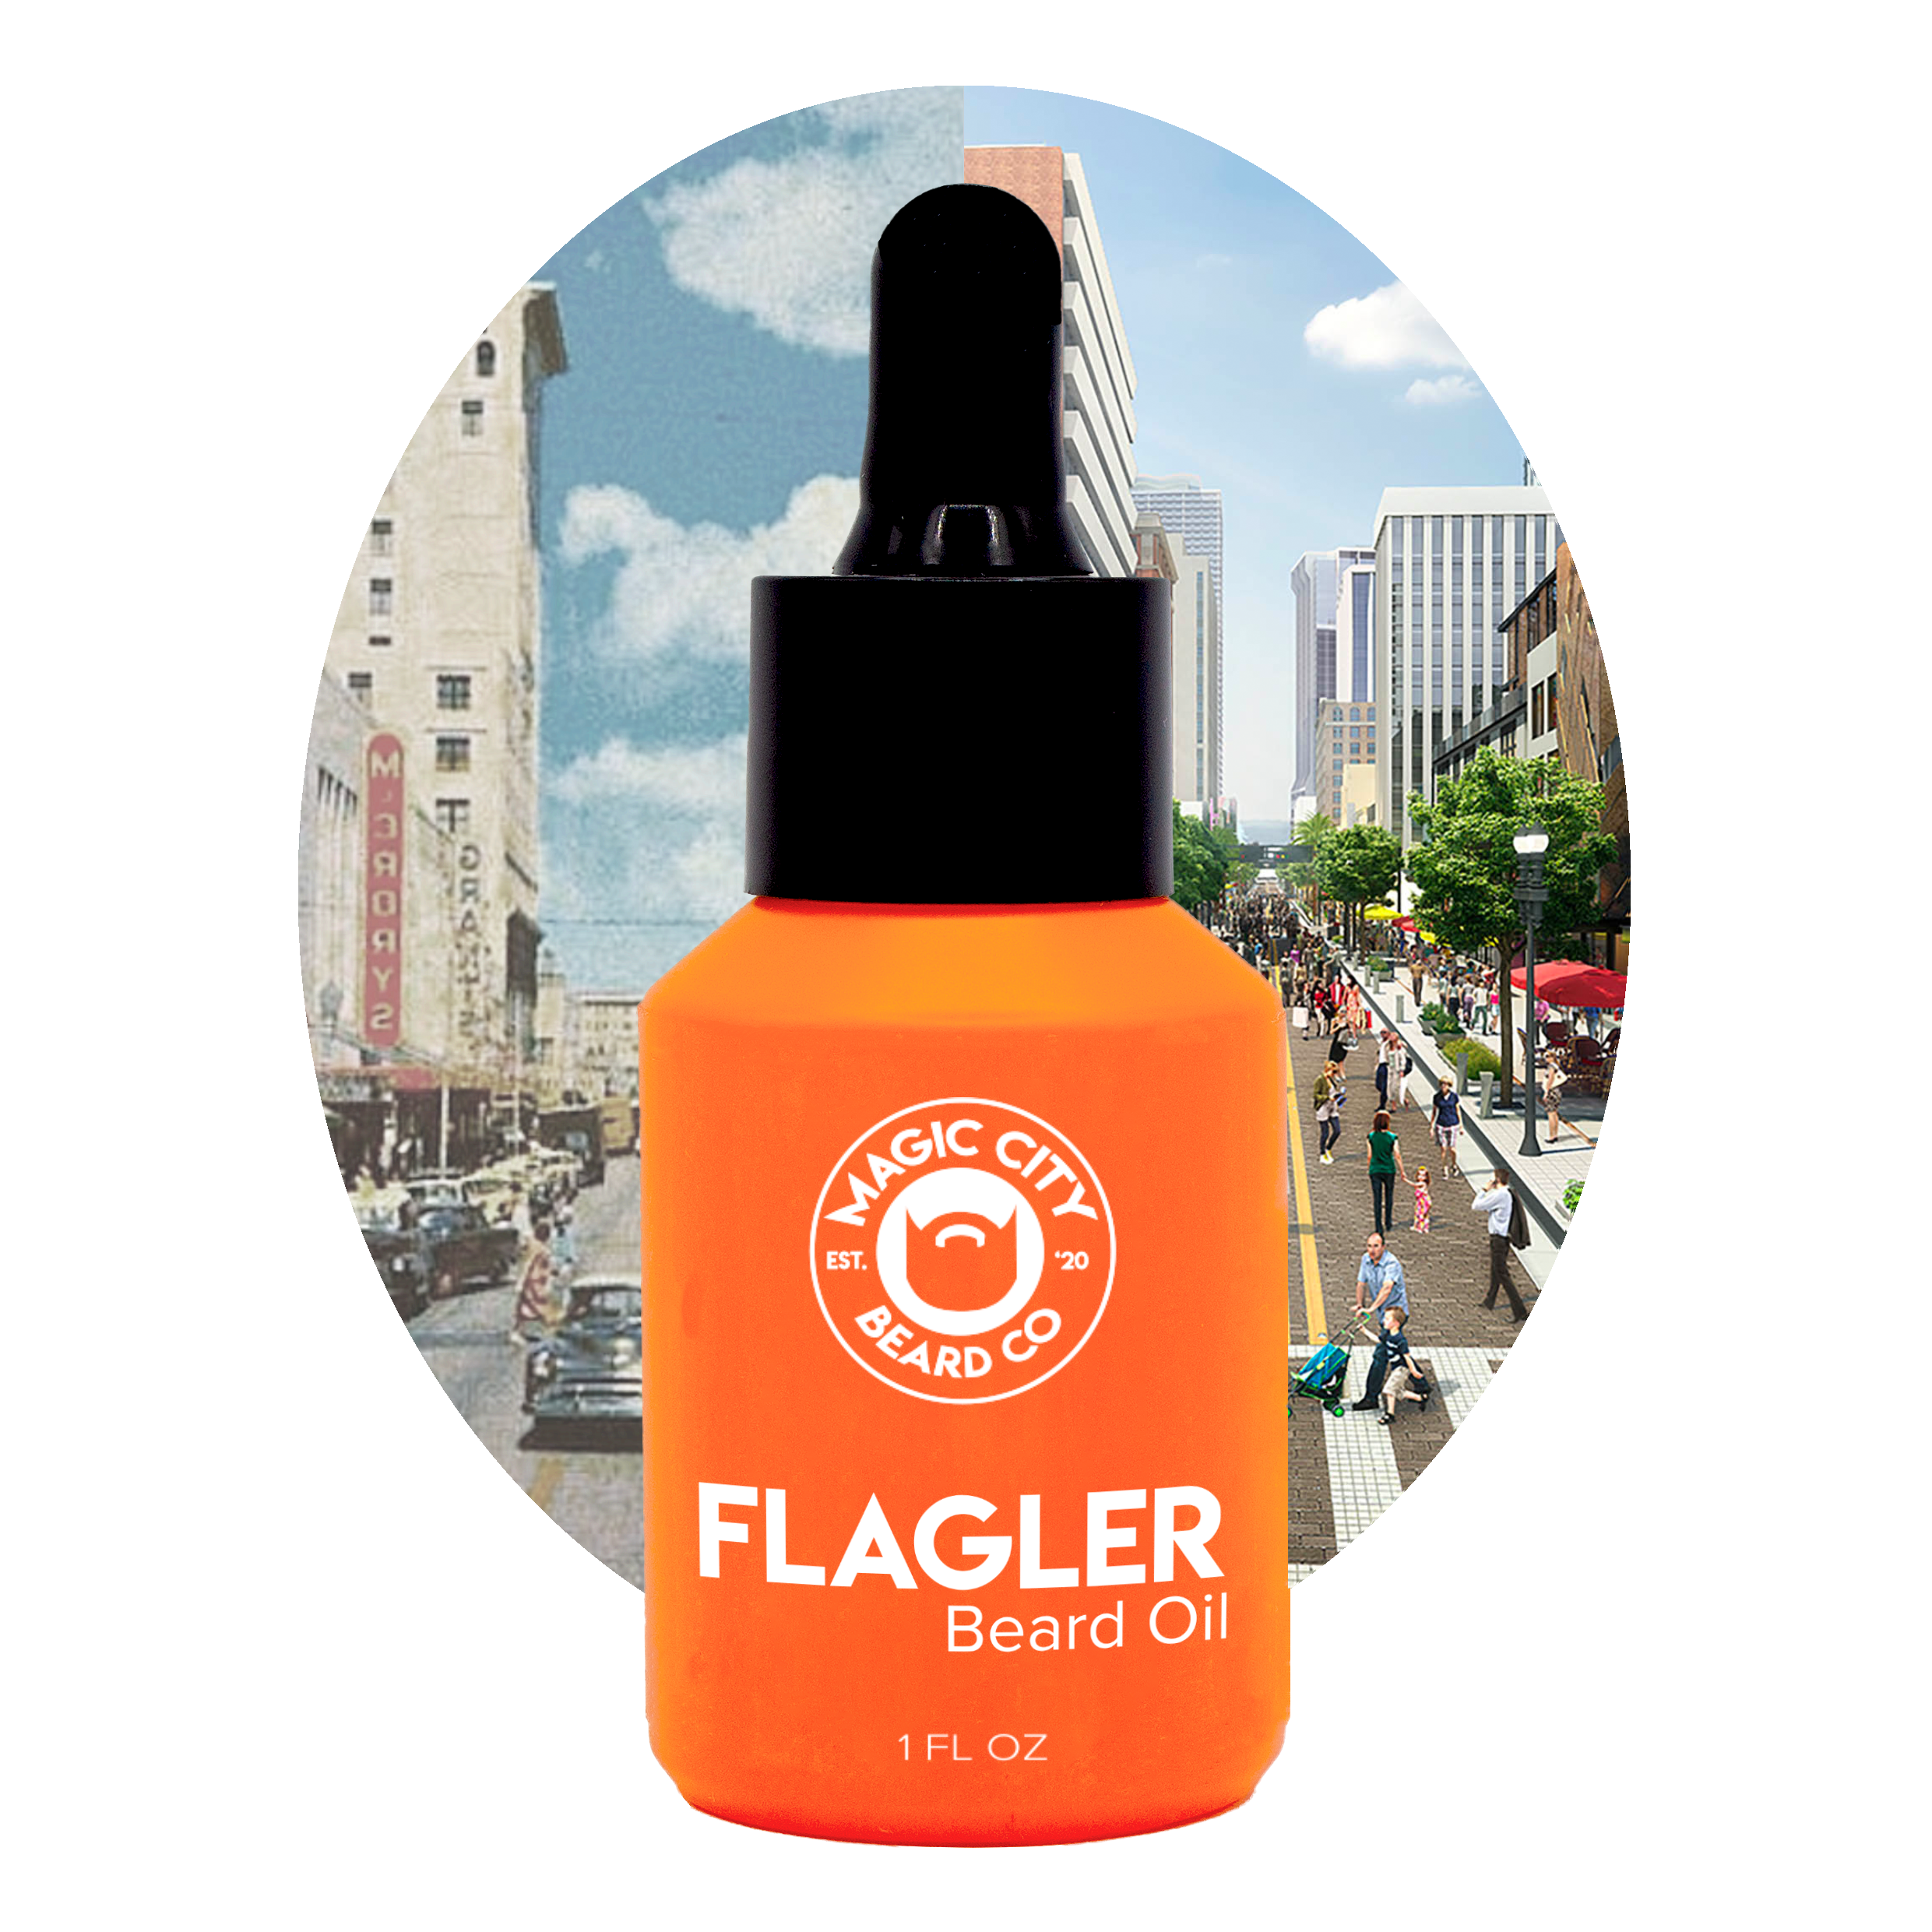 Flagler Beard Oil